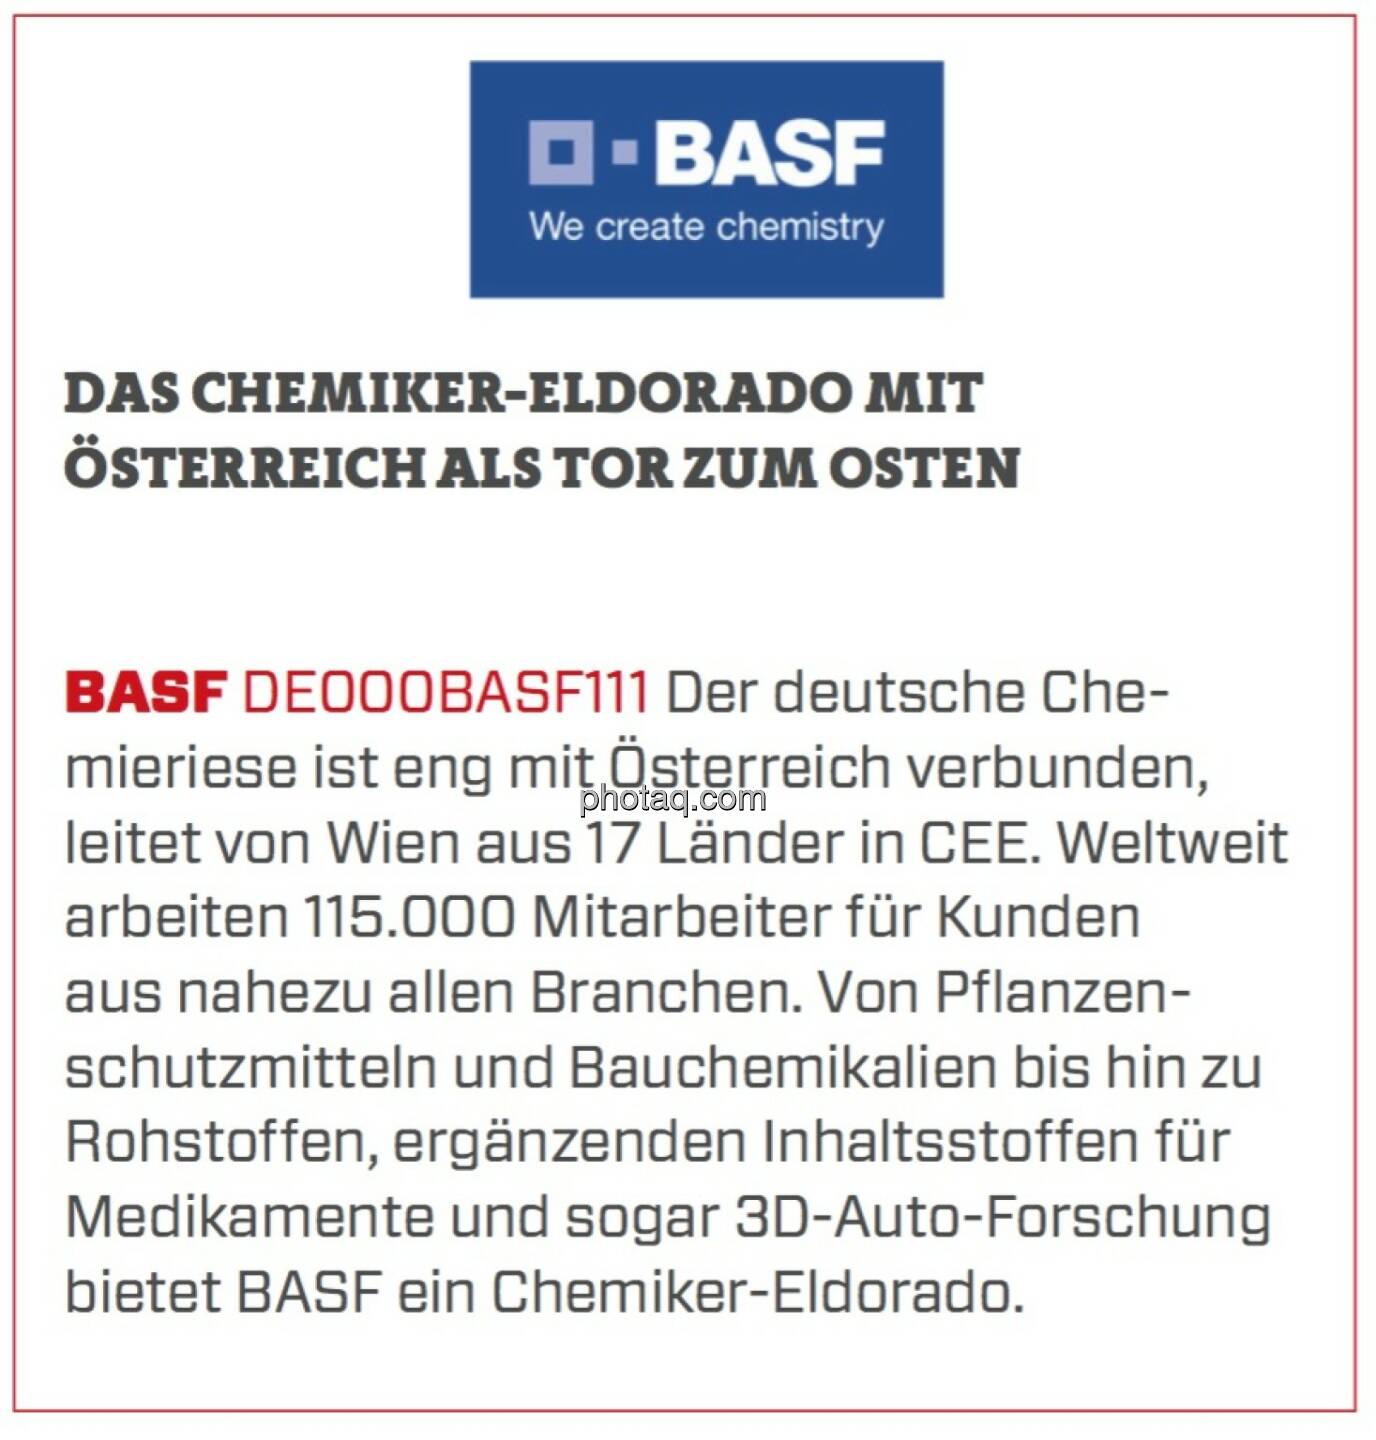 BASF - Das Chemiker-Eldorado mit Österreich als Tor zum Osten: Der deutsche Chemieriese ist eng mit Österreich verbunden, leitet von Wien aus 17 Länder in CEE. Weltweit arbeiten 115.000 Mitarbeiter für Kunden aus nahezu allen Branchen. Von Pflanzenschutzmitteln und Bauchemikalien bis hin zu Rohstoffen, ergänzenden Inhaltsstoffen für Medikamente und sogar 3D-Auto-Forschung bietet BASF ein Chemiker-Eldorado. 